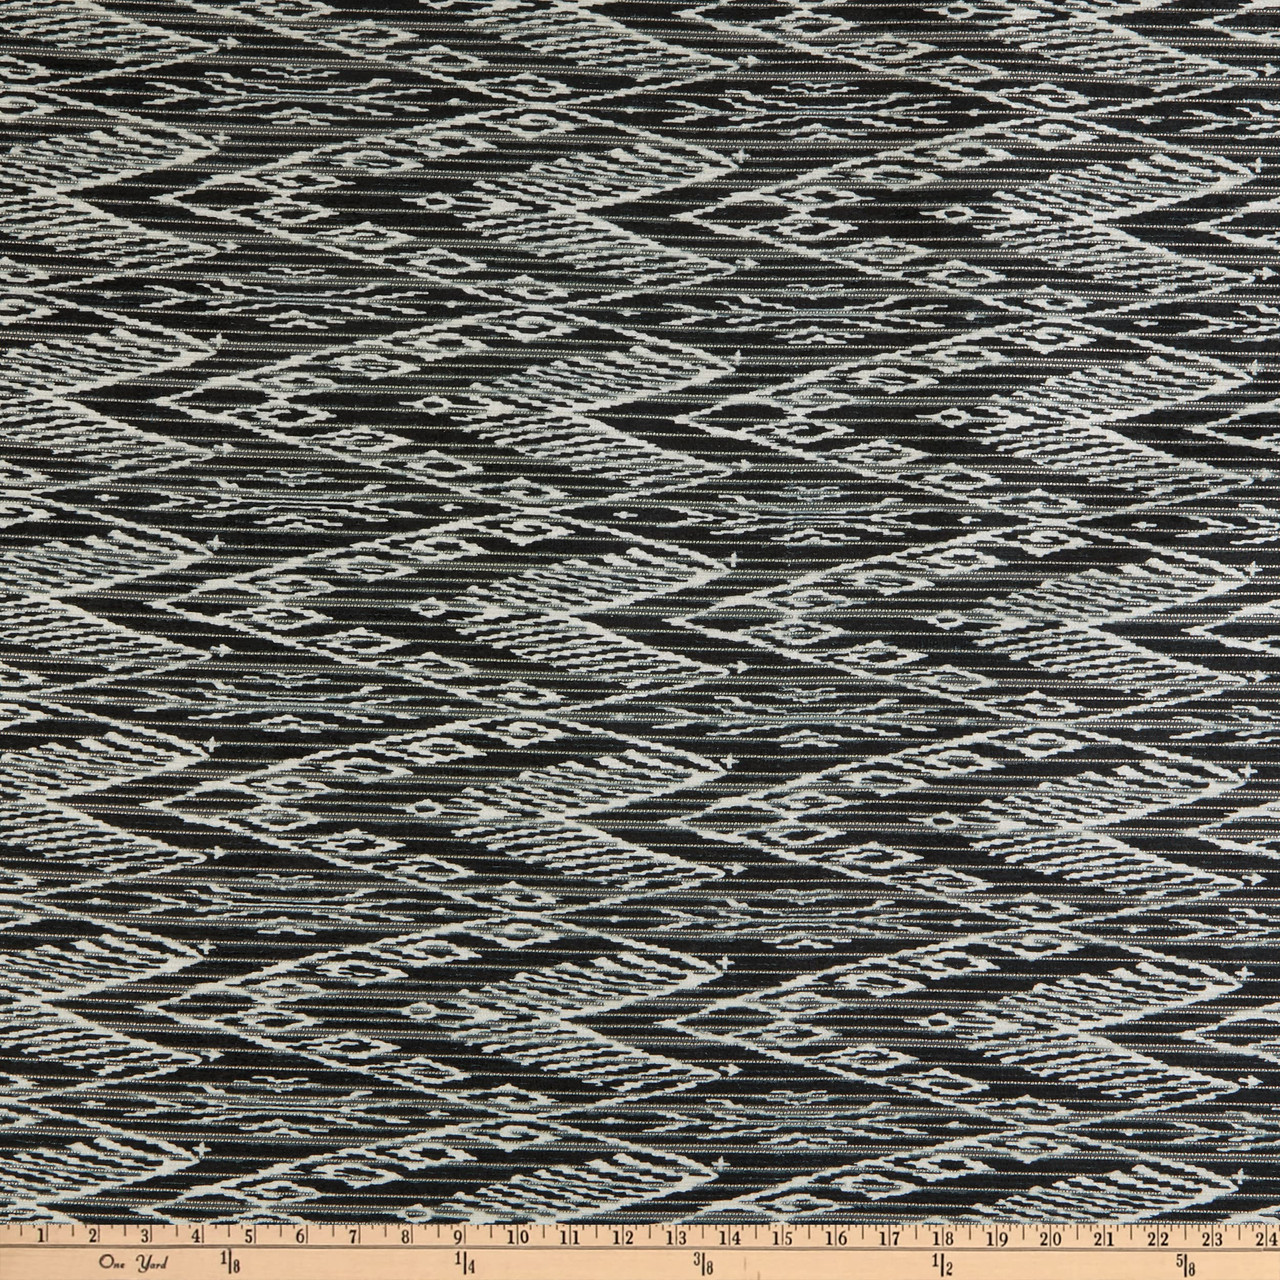 Alpine Upholstery Velvet Hunter Green | Medium/Heavyweight Velvet Fabric |  Home Decor Fabric | 54 Wide